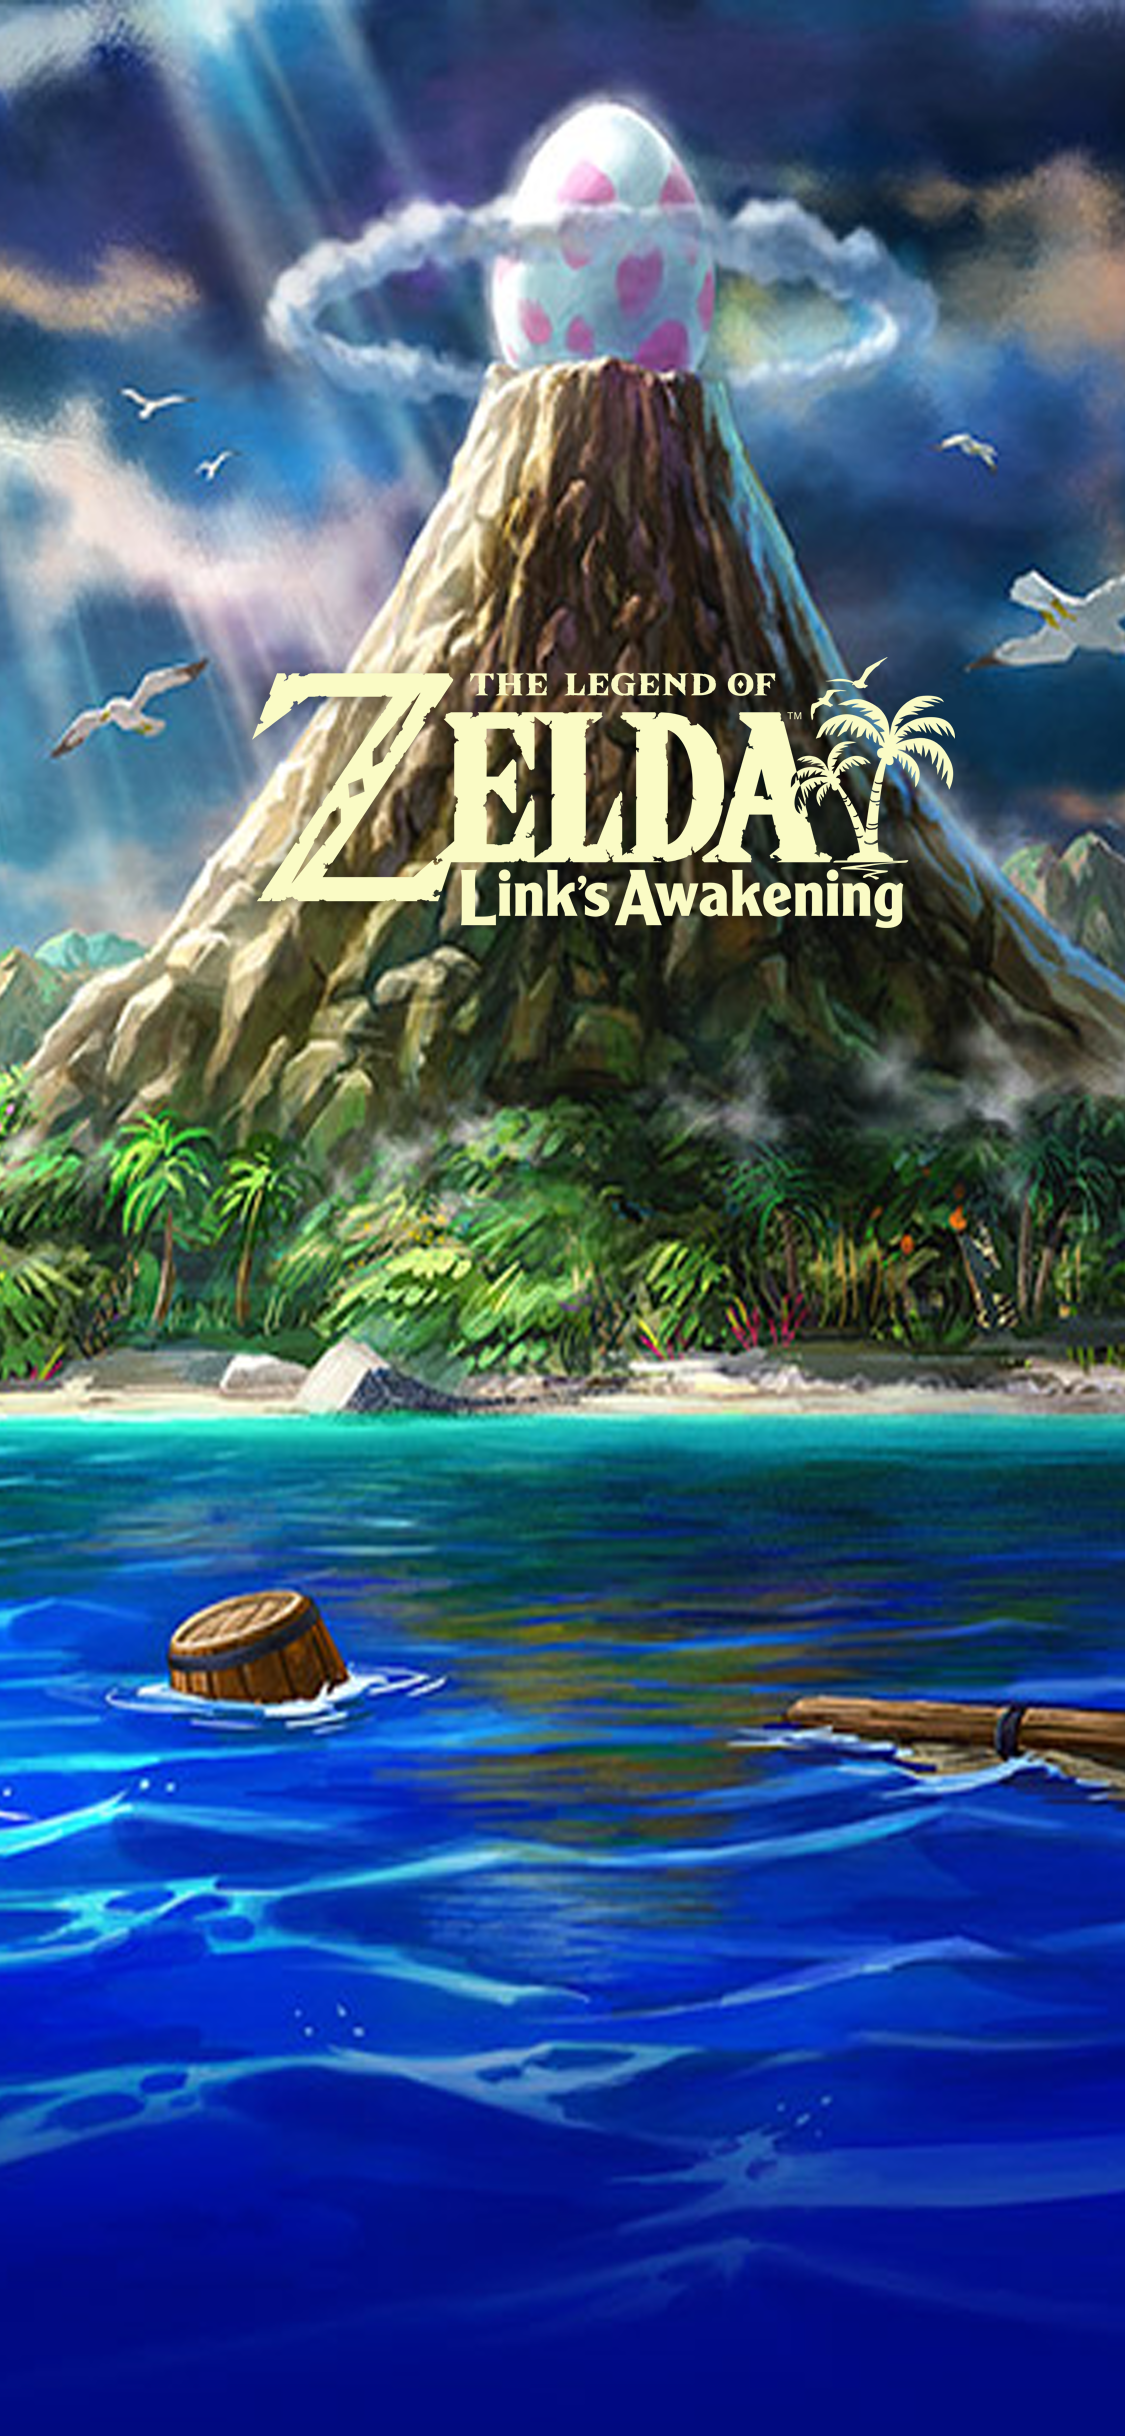 The Legend of Zelda  Link s Awakening Wallpapers  